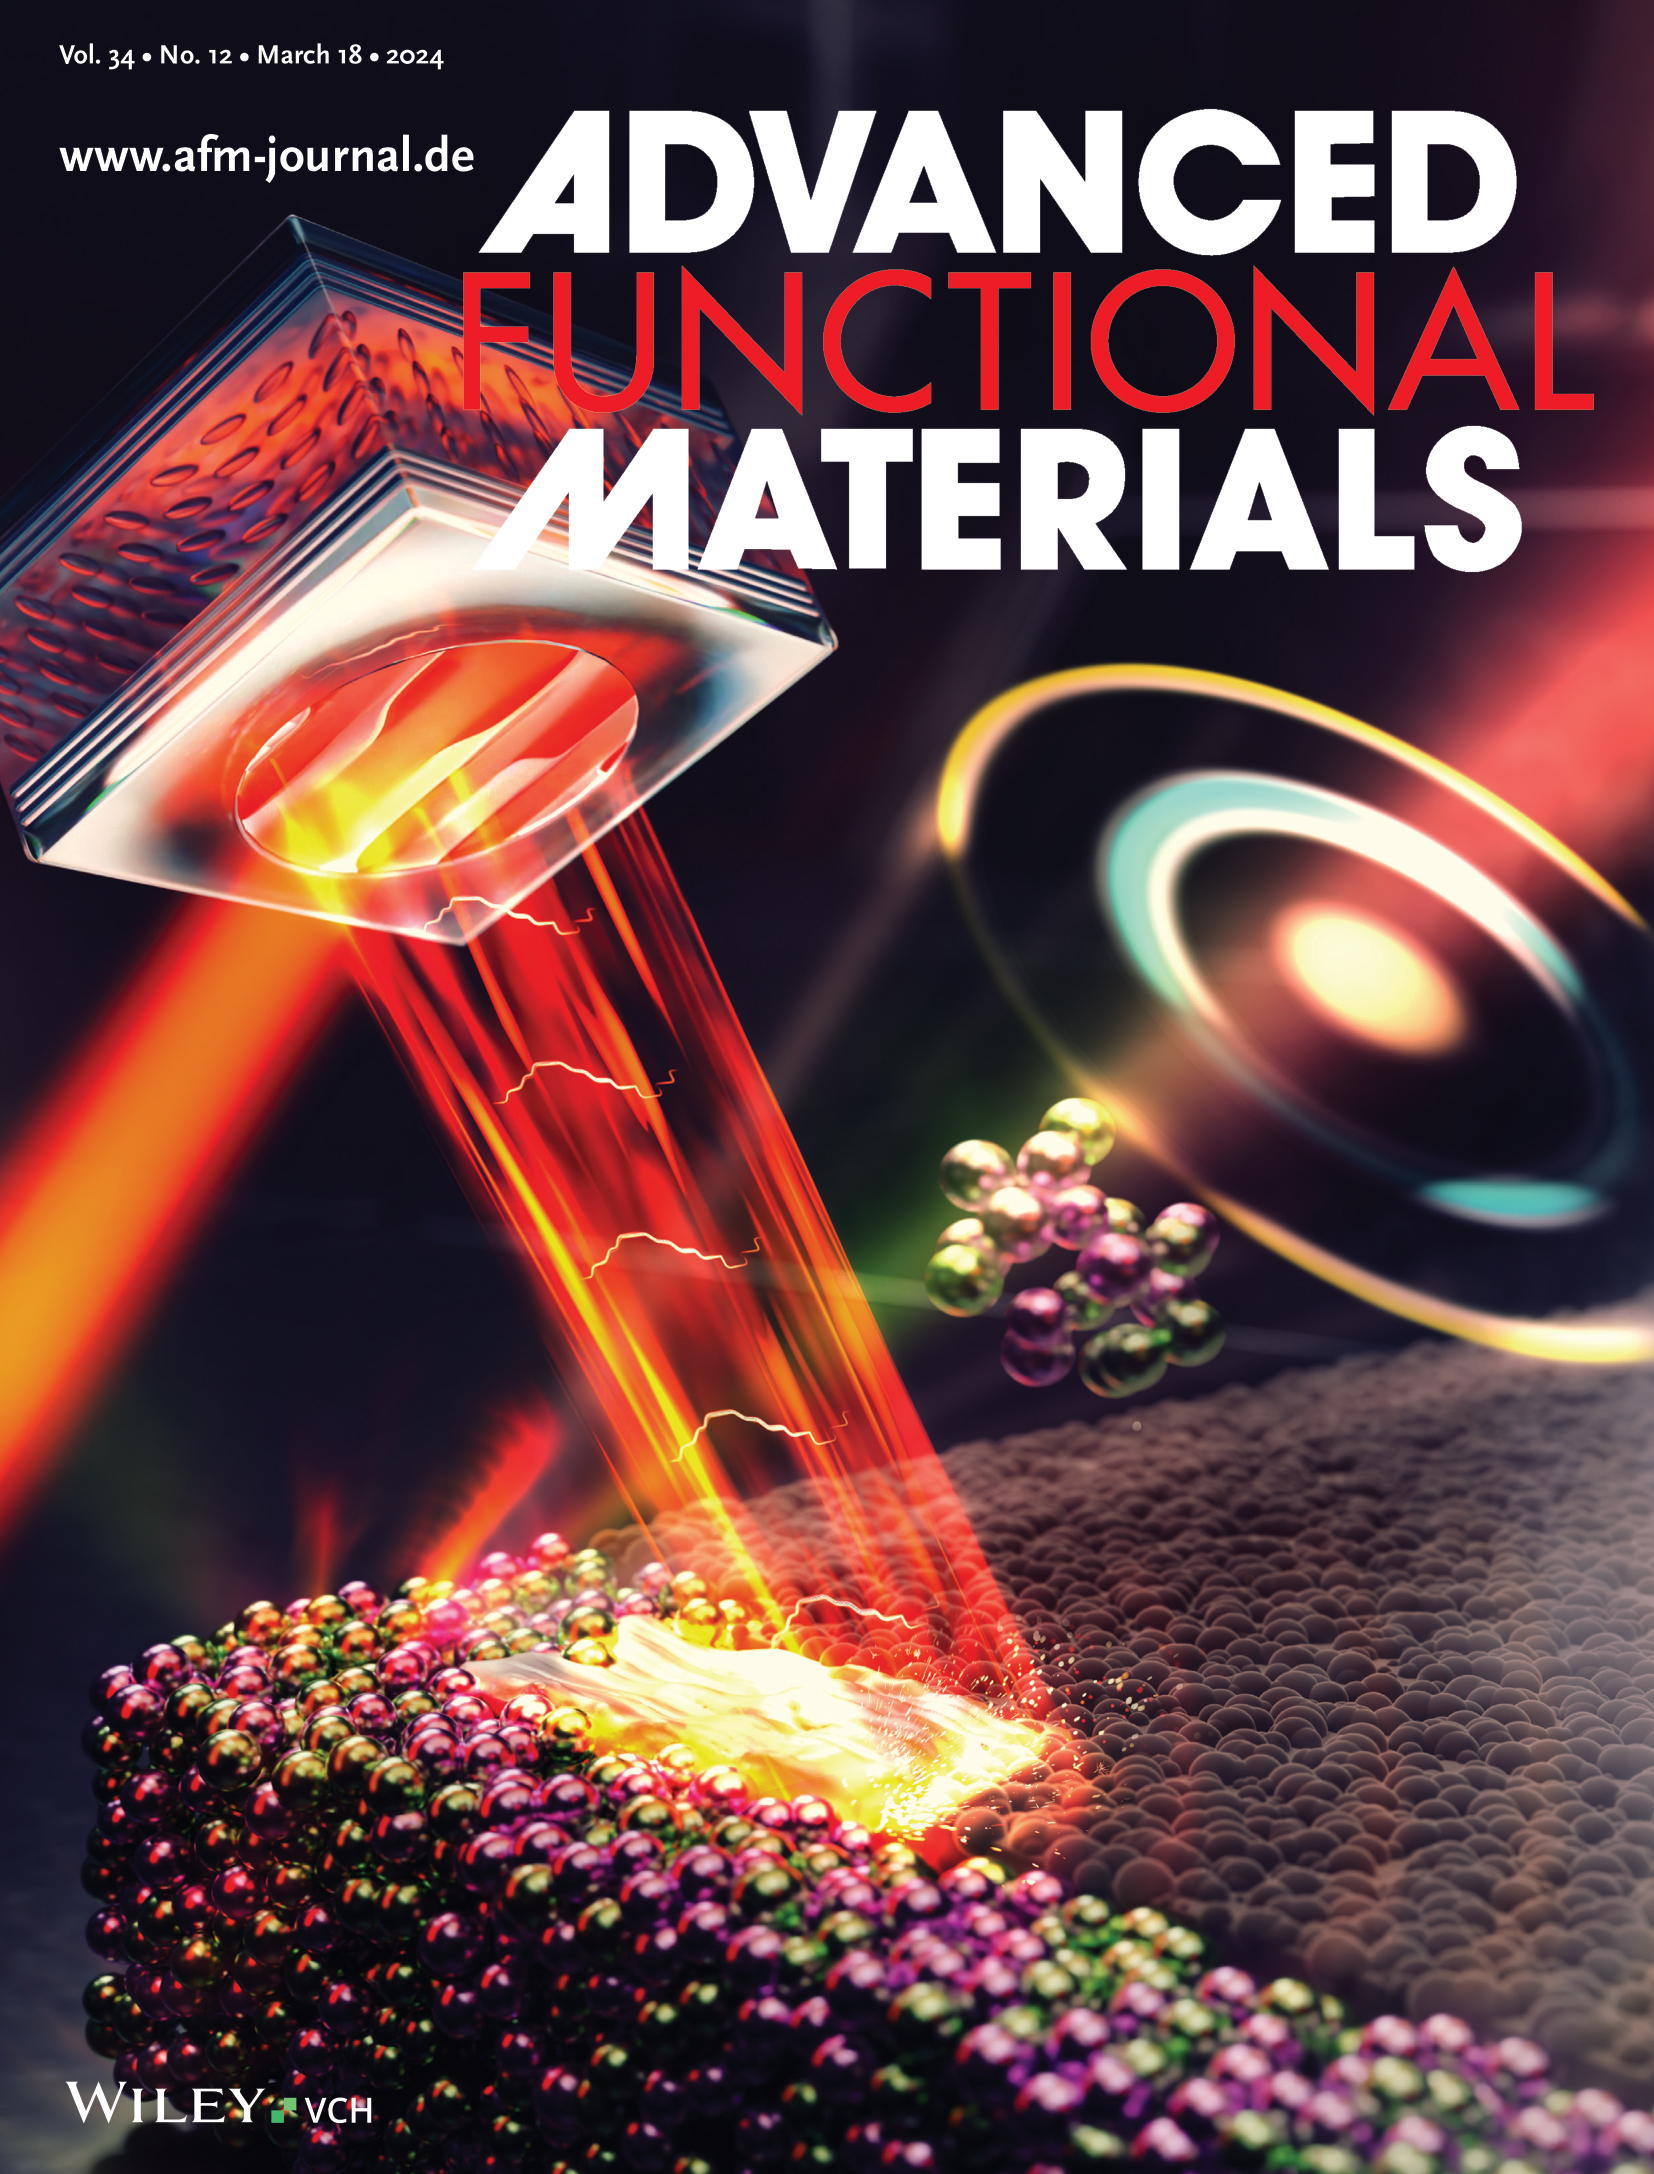 Ein starker Laserstrahl in gelb und rot, der Metall formt am Cover der Fachzeitschrift "Advanced Functional Materials".